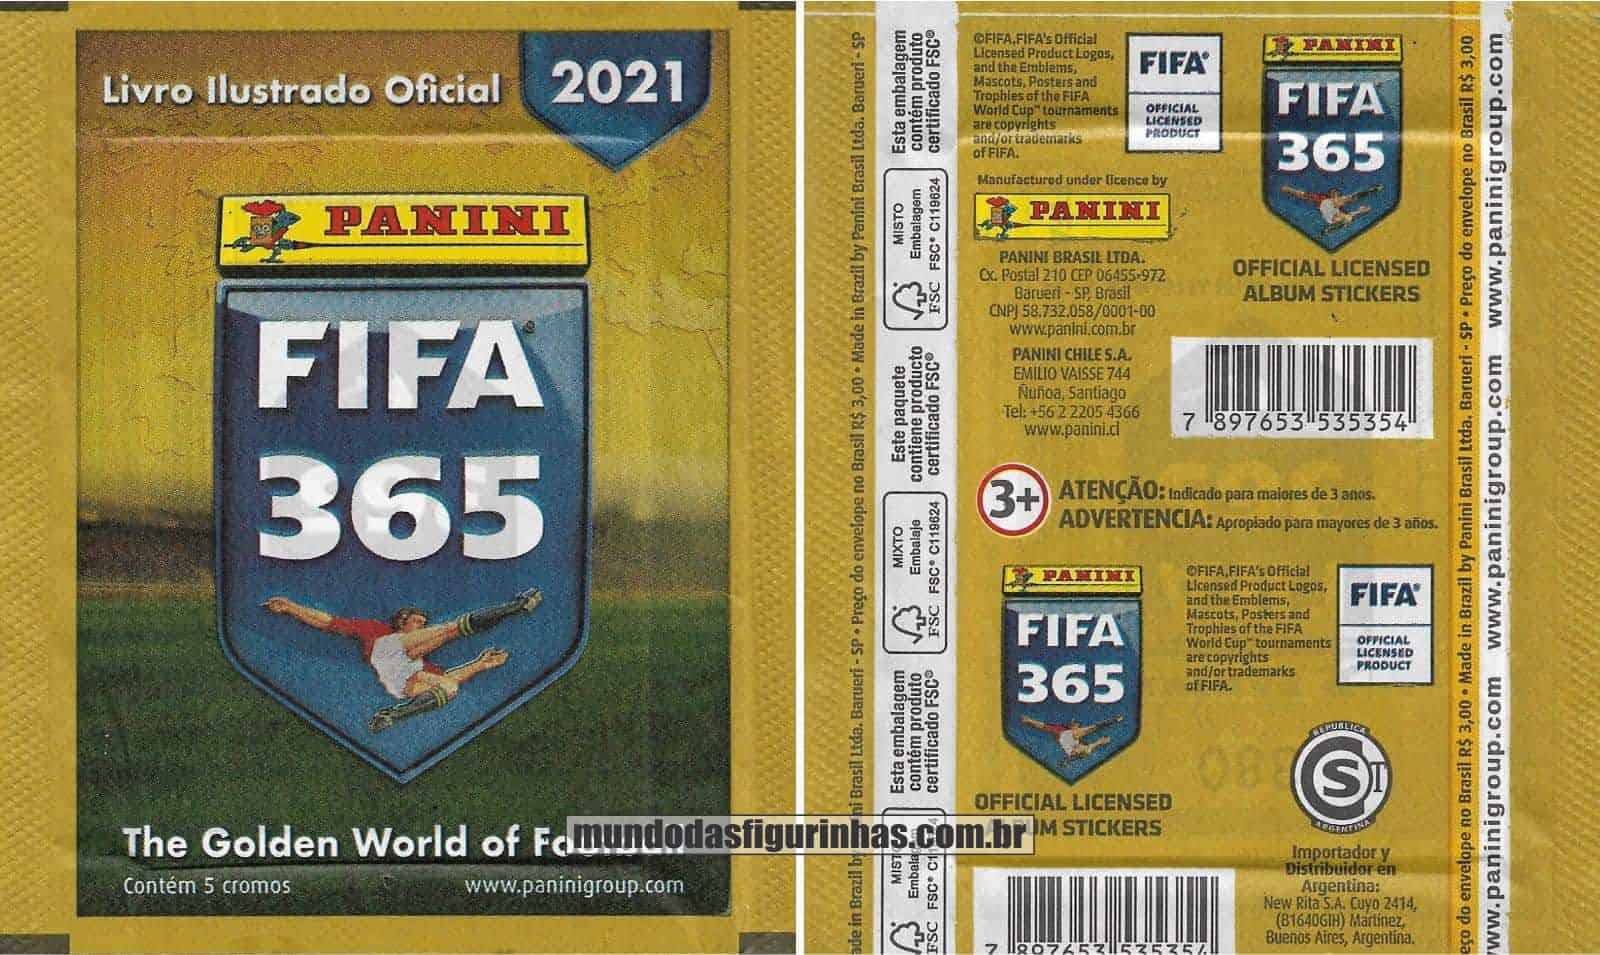 Pacotinho Fifa 365 2021 com a frase “Contém 5 Cromos”.